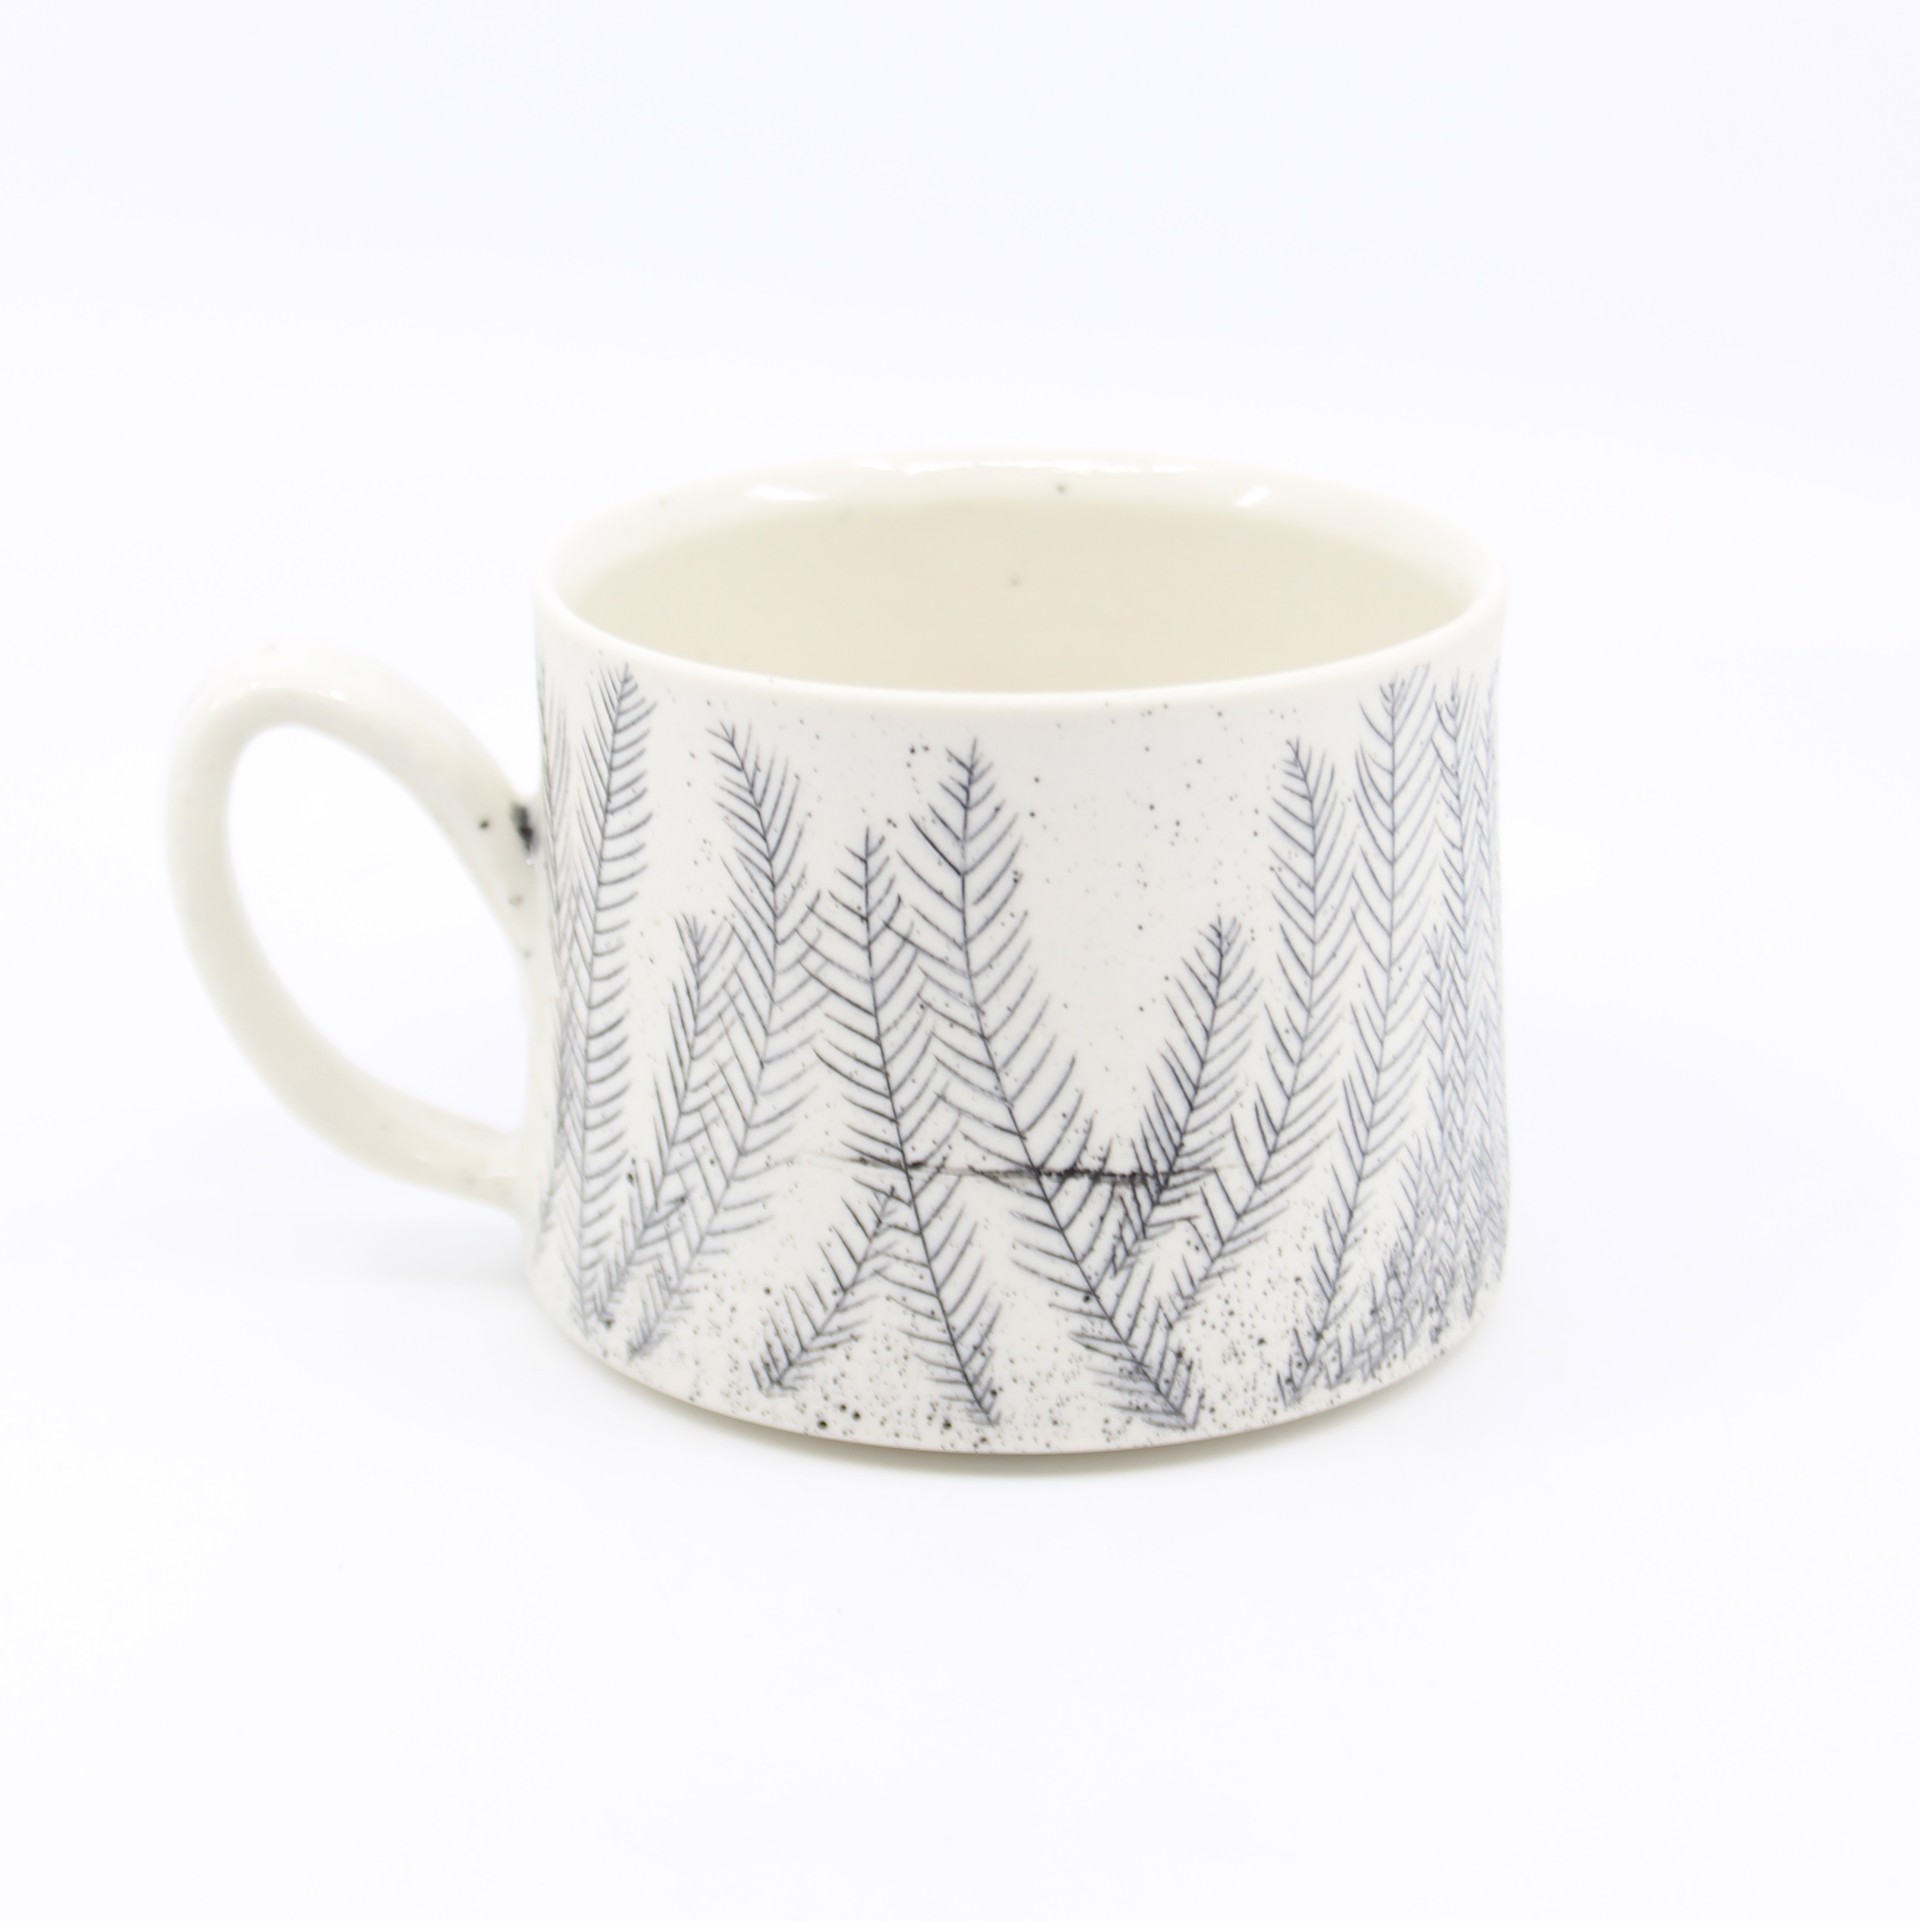 Fern Feather Mug by Bianka Groves